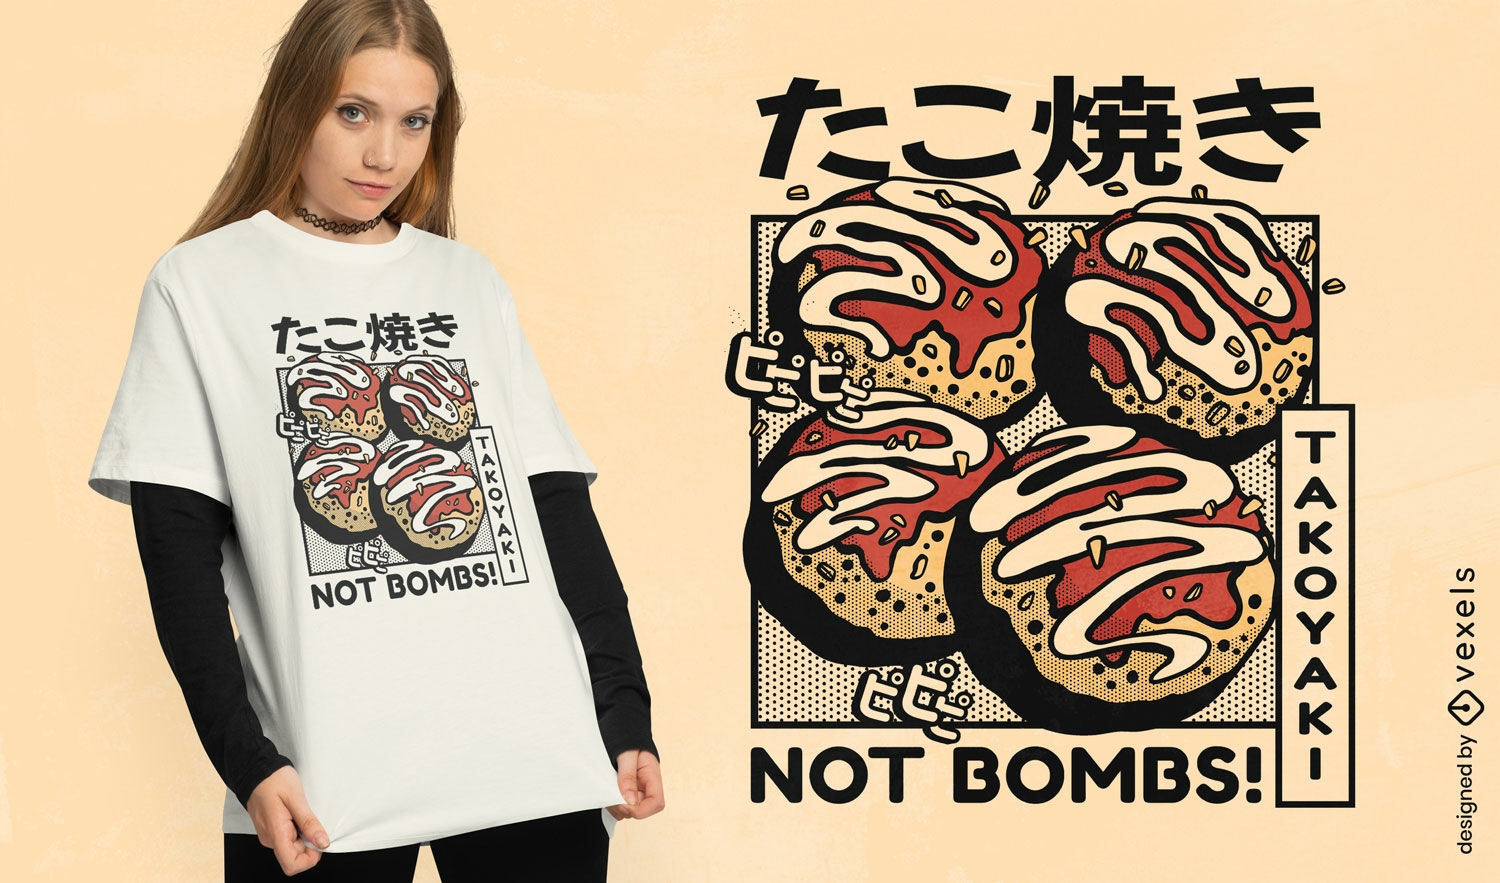 Takoyaki quote t-shirt design